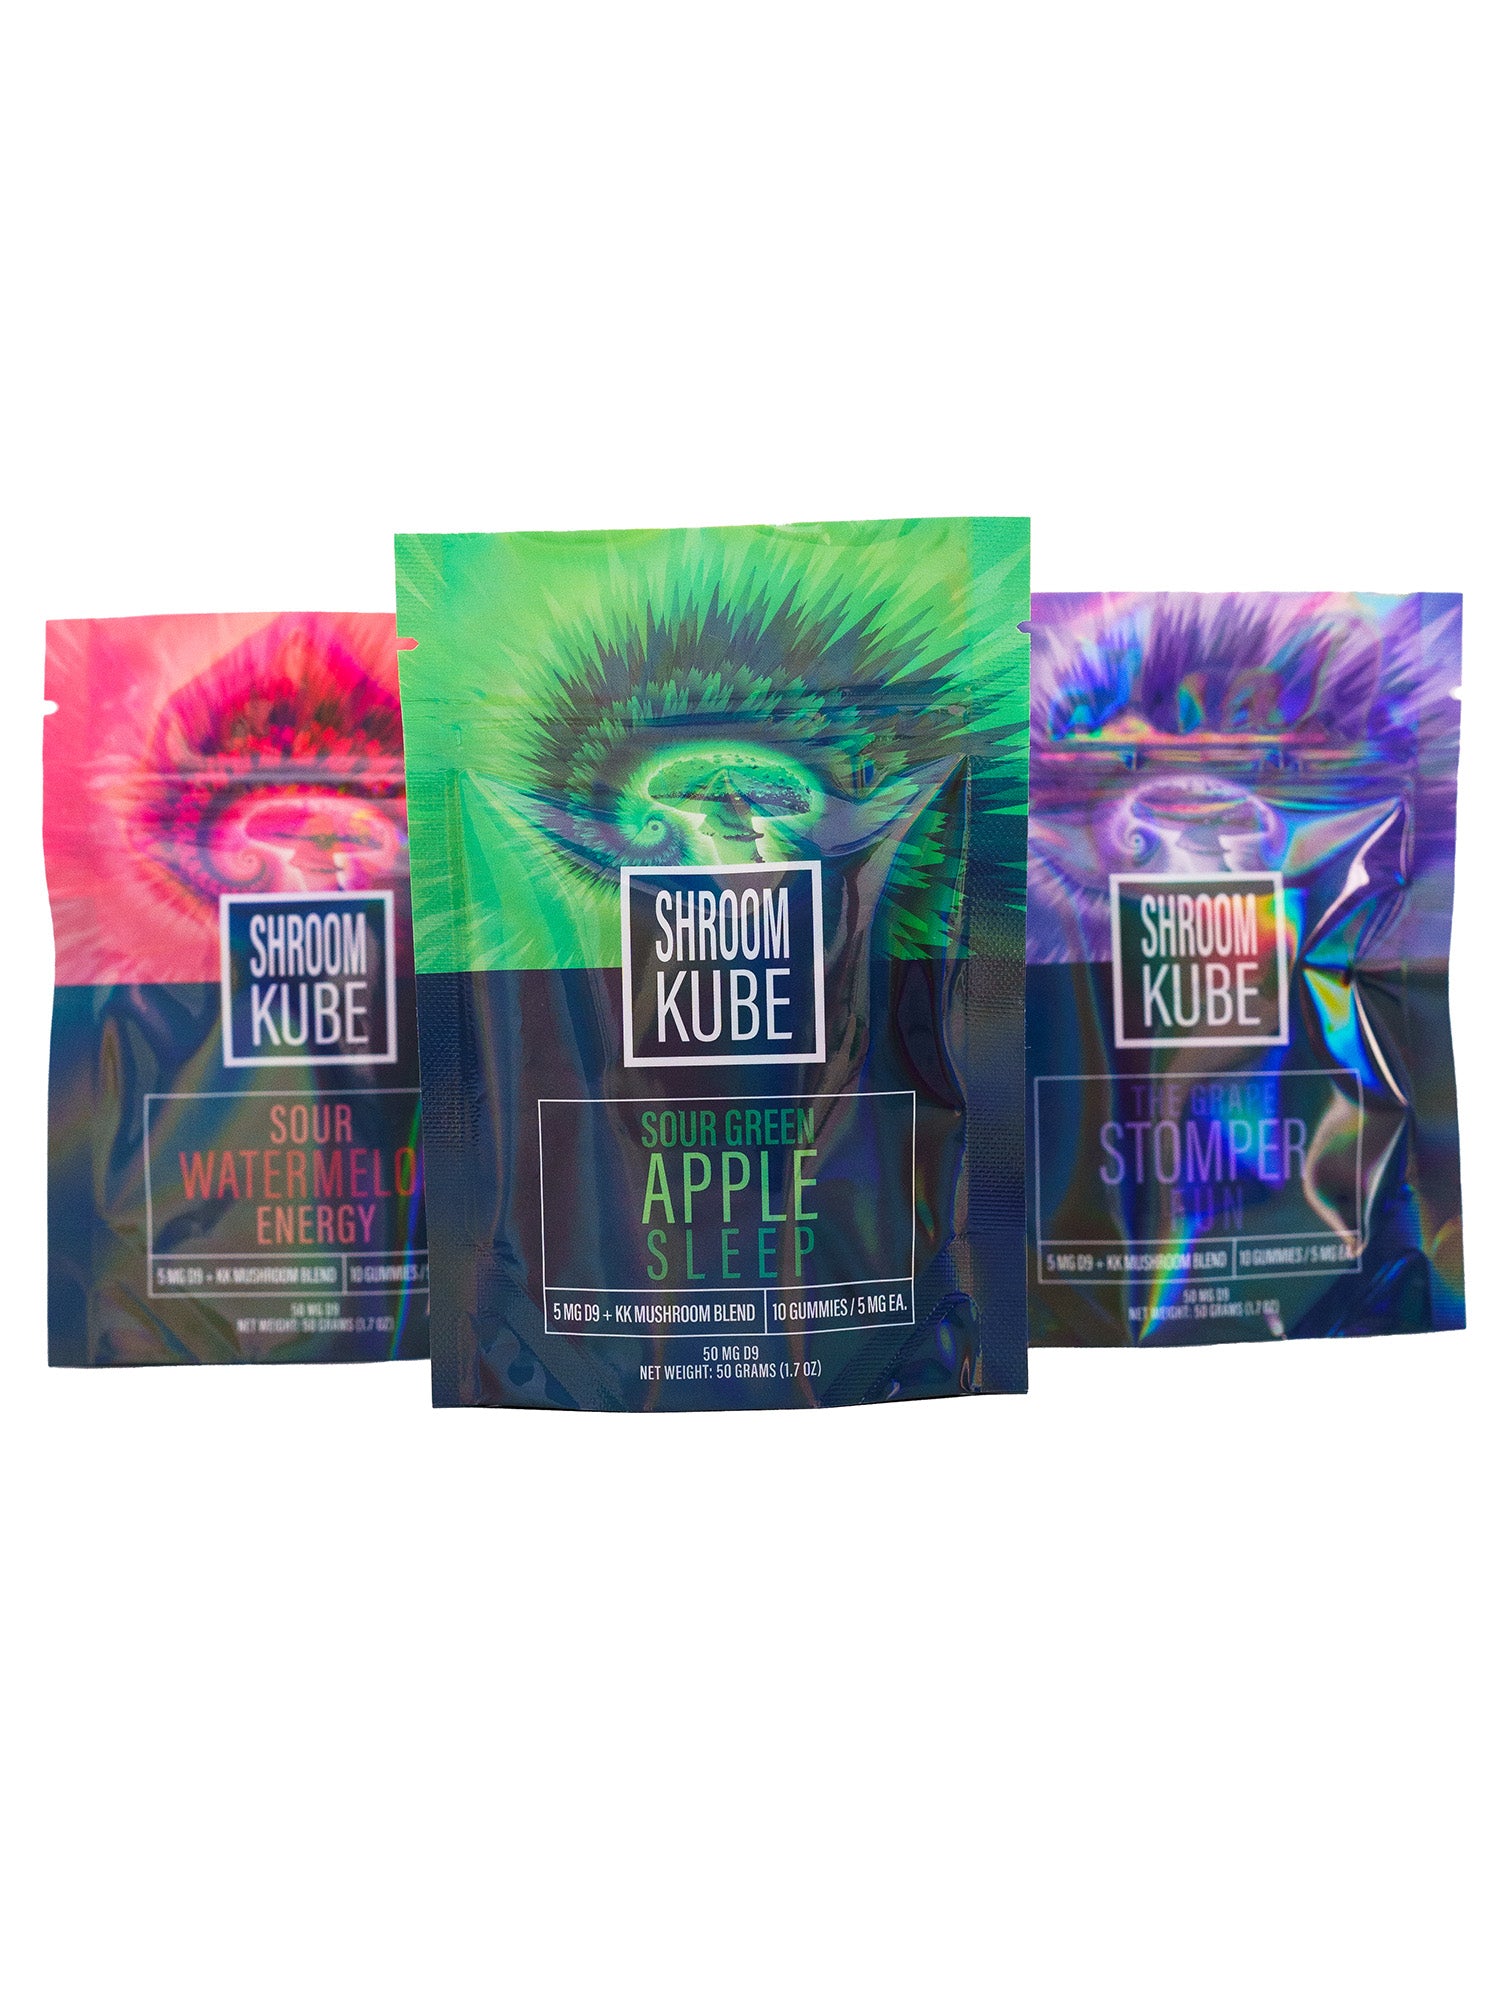 Shroom Kube - Sour Green Apple - 10 Pack Bag (Functional Mushrooms + D9 THC)